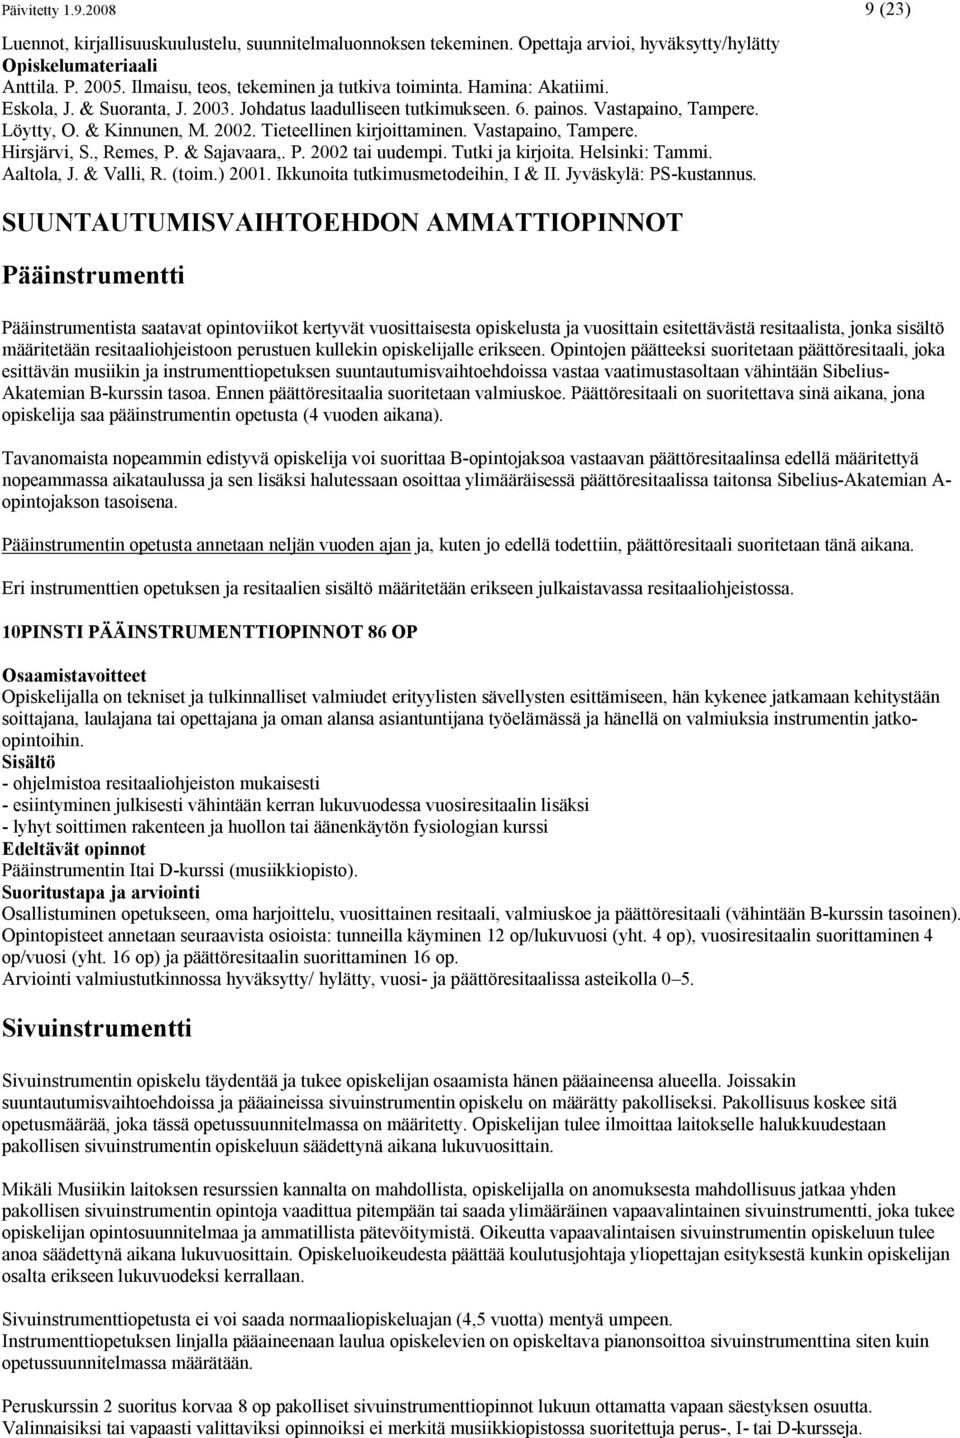 Tieteellinen kirjoittaminen. Vastapaino, Tampere. Hirsjärvi, S., Remes, P. & Sajavaara,. P. 2002 tai uudempi. Tutki ja kirjoita. Helsinki: Tammi. Aaltola, J. & Valli, R. (toim.) 2001.